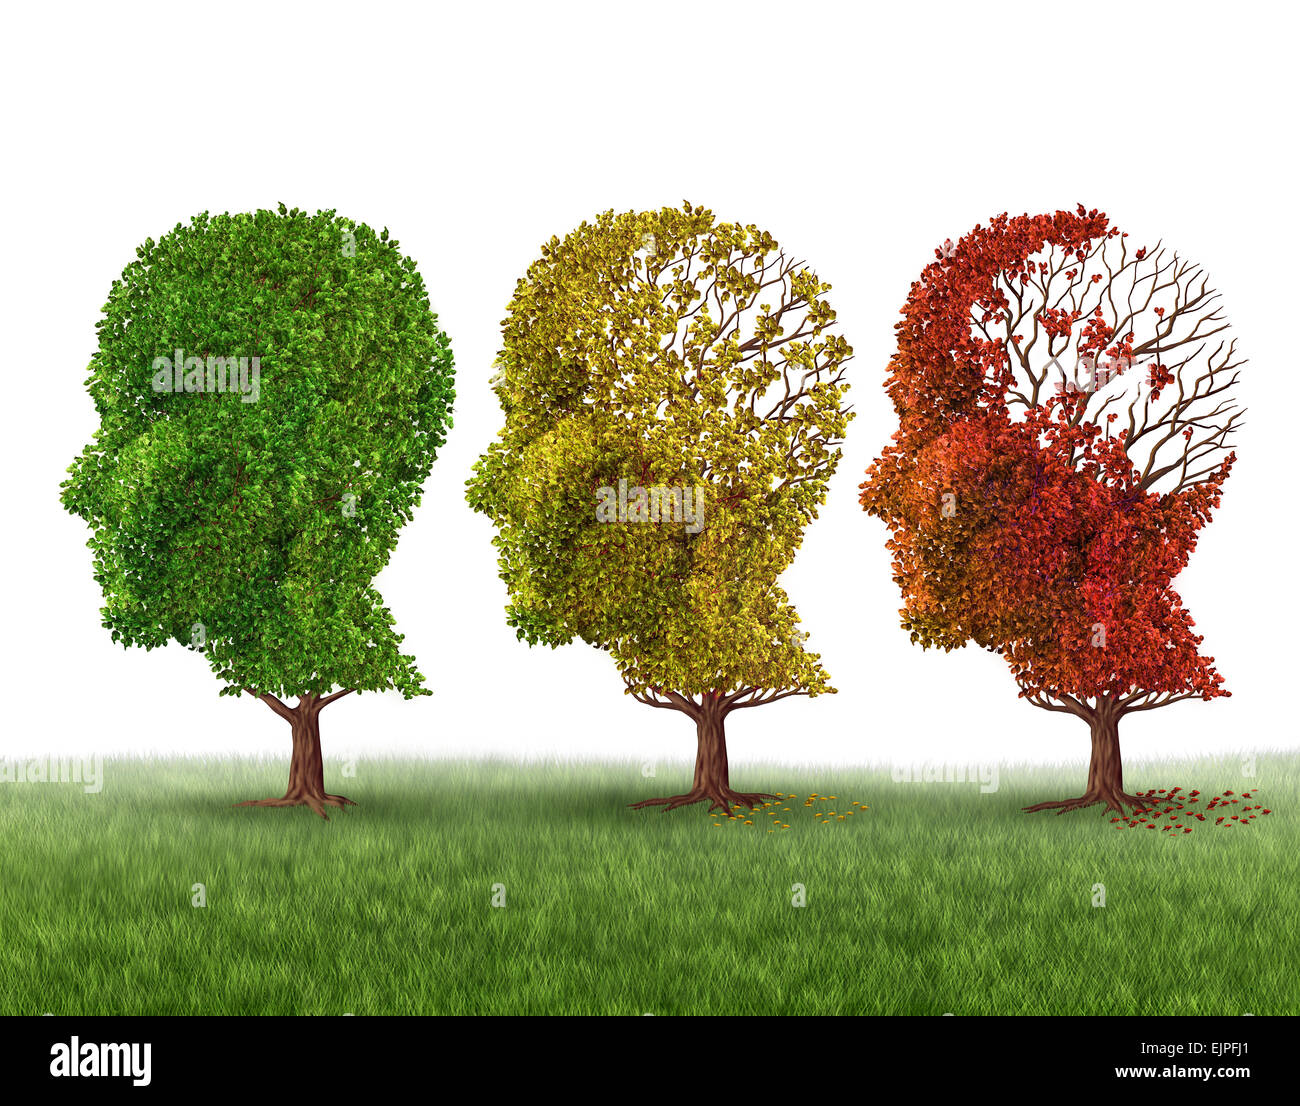 La perte de mémoire et le vieillissement du cerveau en raison de la démence et la maladie d'alzheimer comme une icône médical d'un groupe d'arbres d'automne l'automne changement de couleur en forme de tête humaine laisse perdre comme fonction de renseignement sur un fond blanc. Banque D'Images